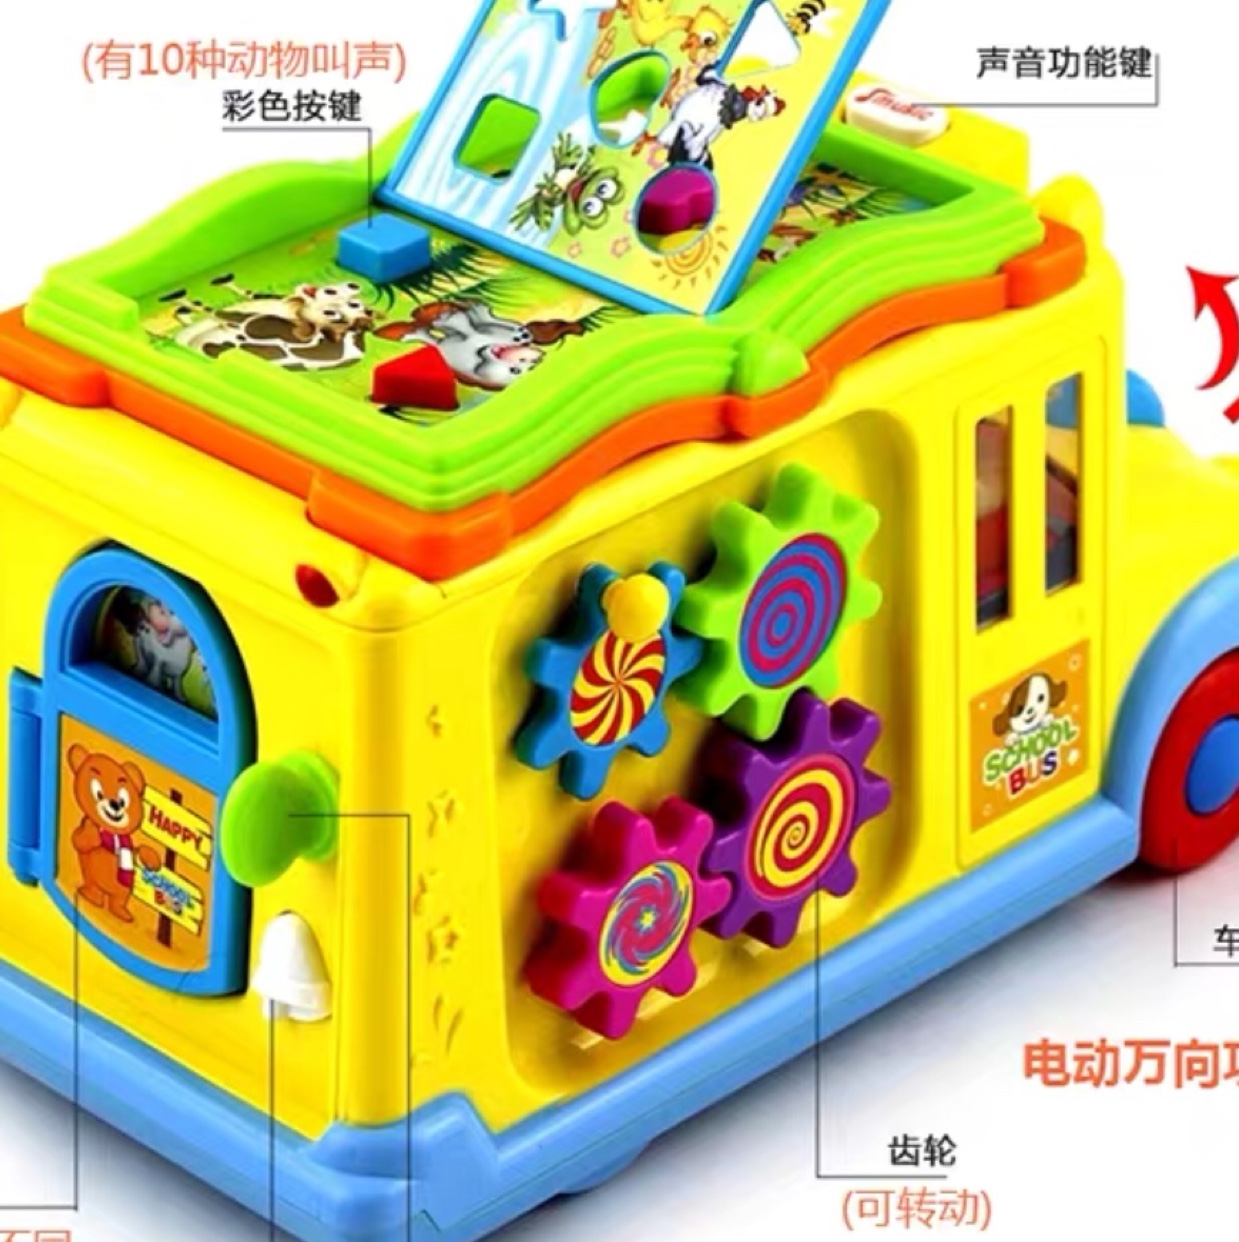 宝宝在游戏中能提高认𣲵能力开通思维提高宝宝的动手能力是一款智能校园巴士儿童益智早教玩具车产品图